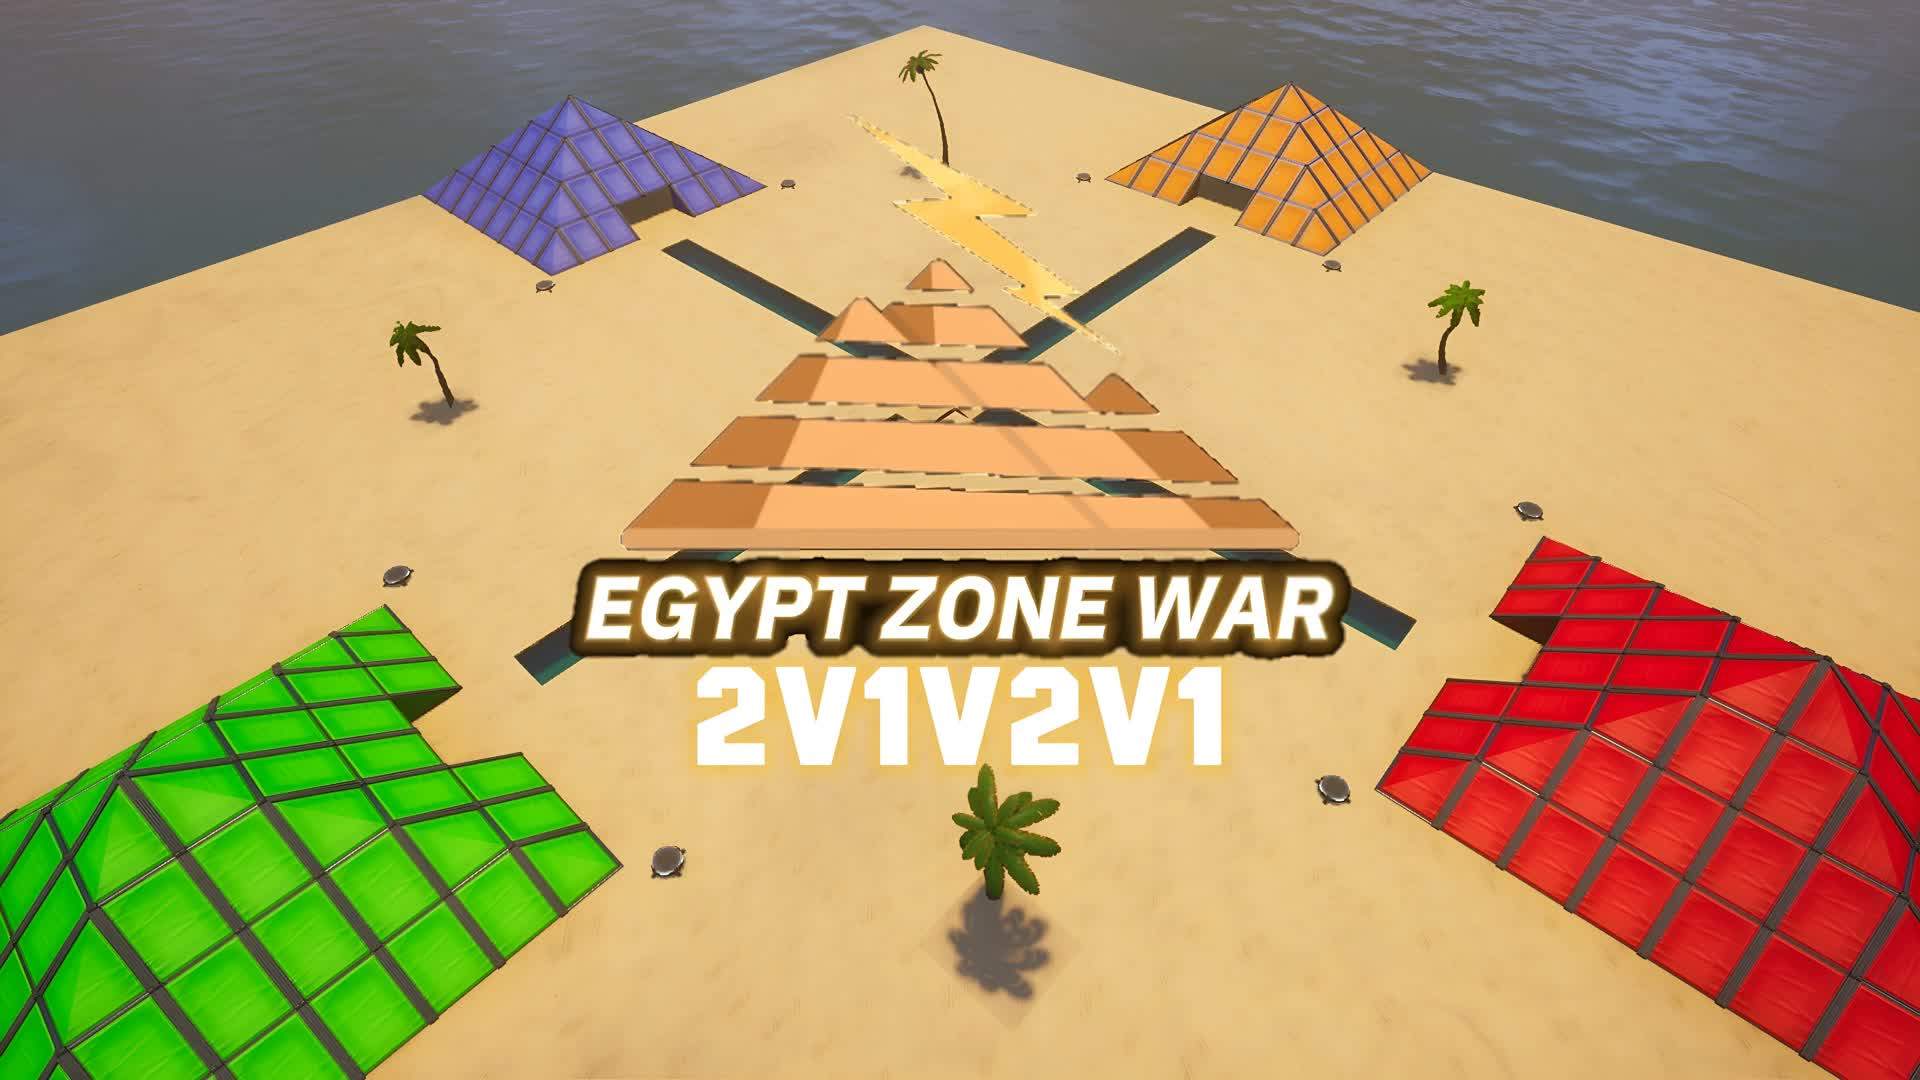 Egypt Zone Wars 2v1v2v1